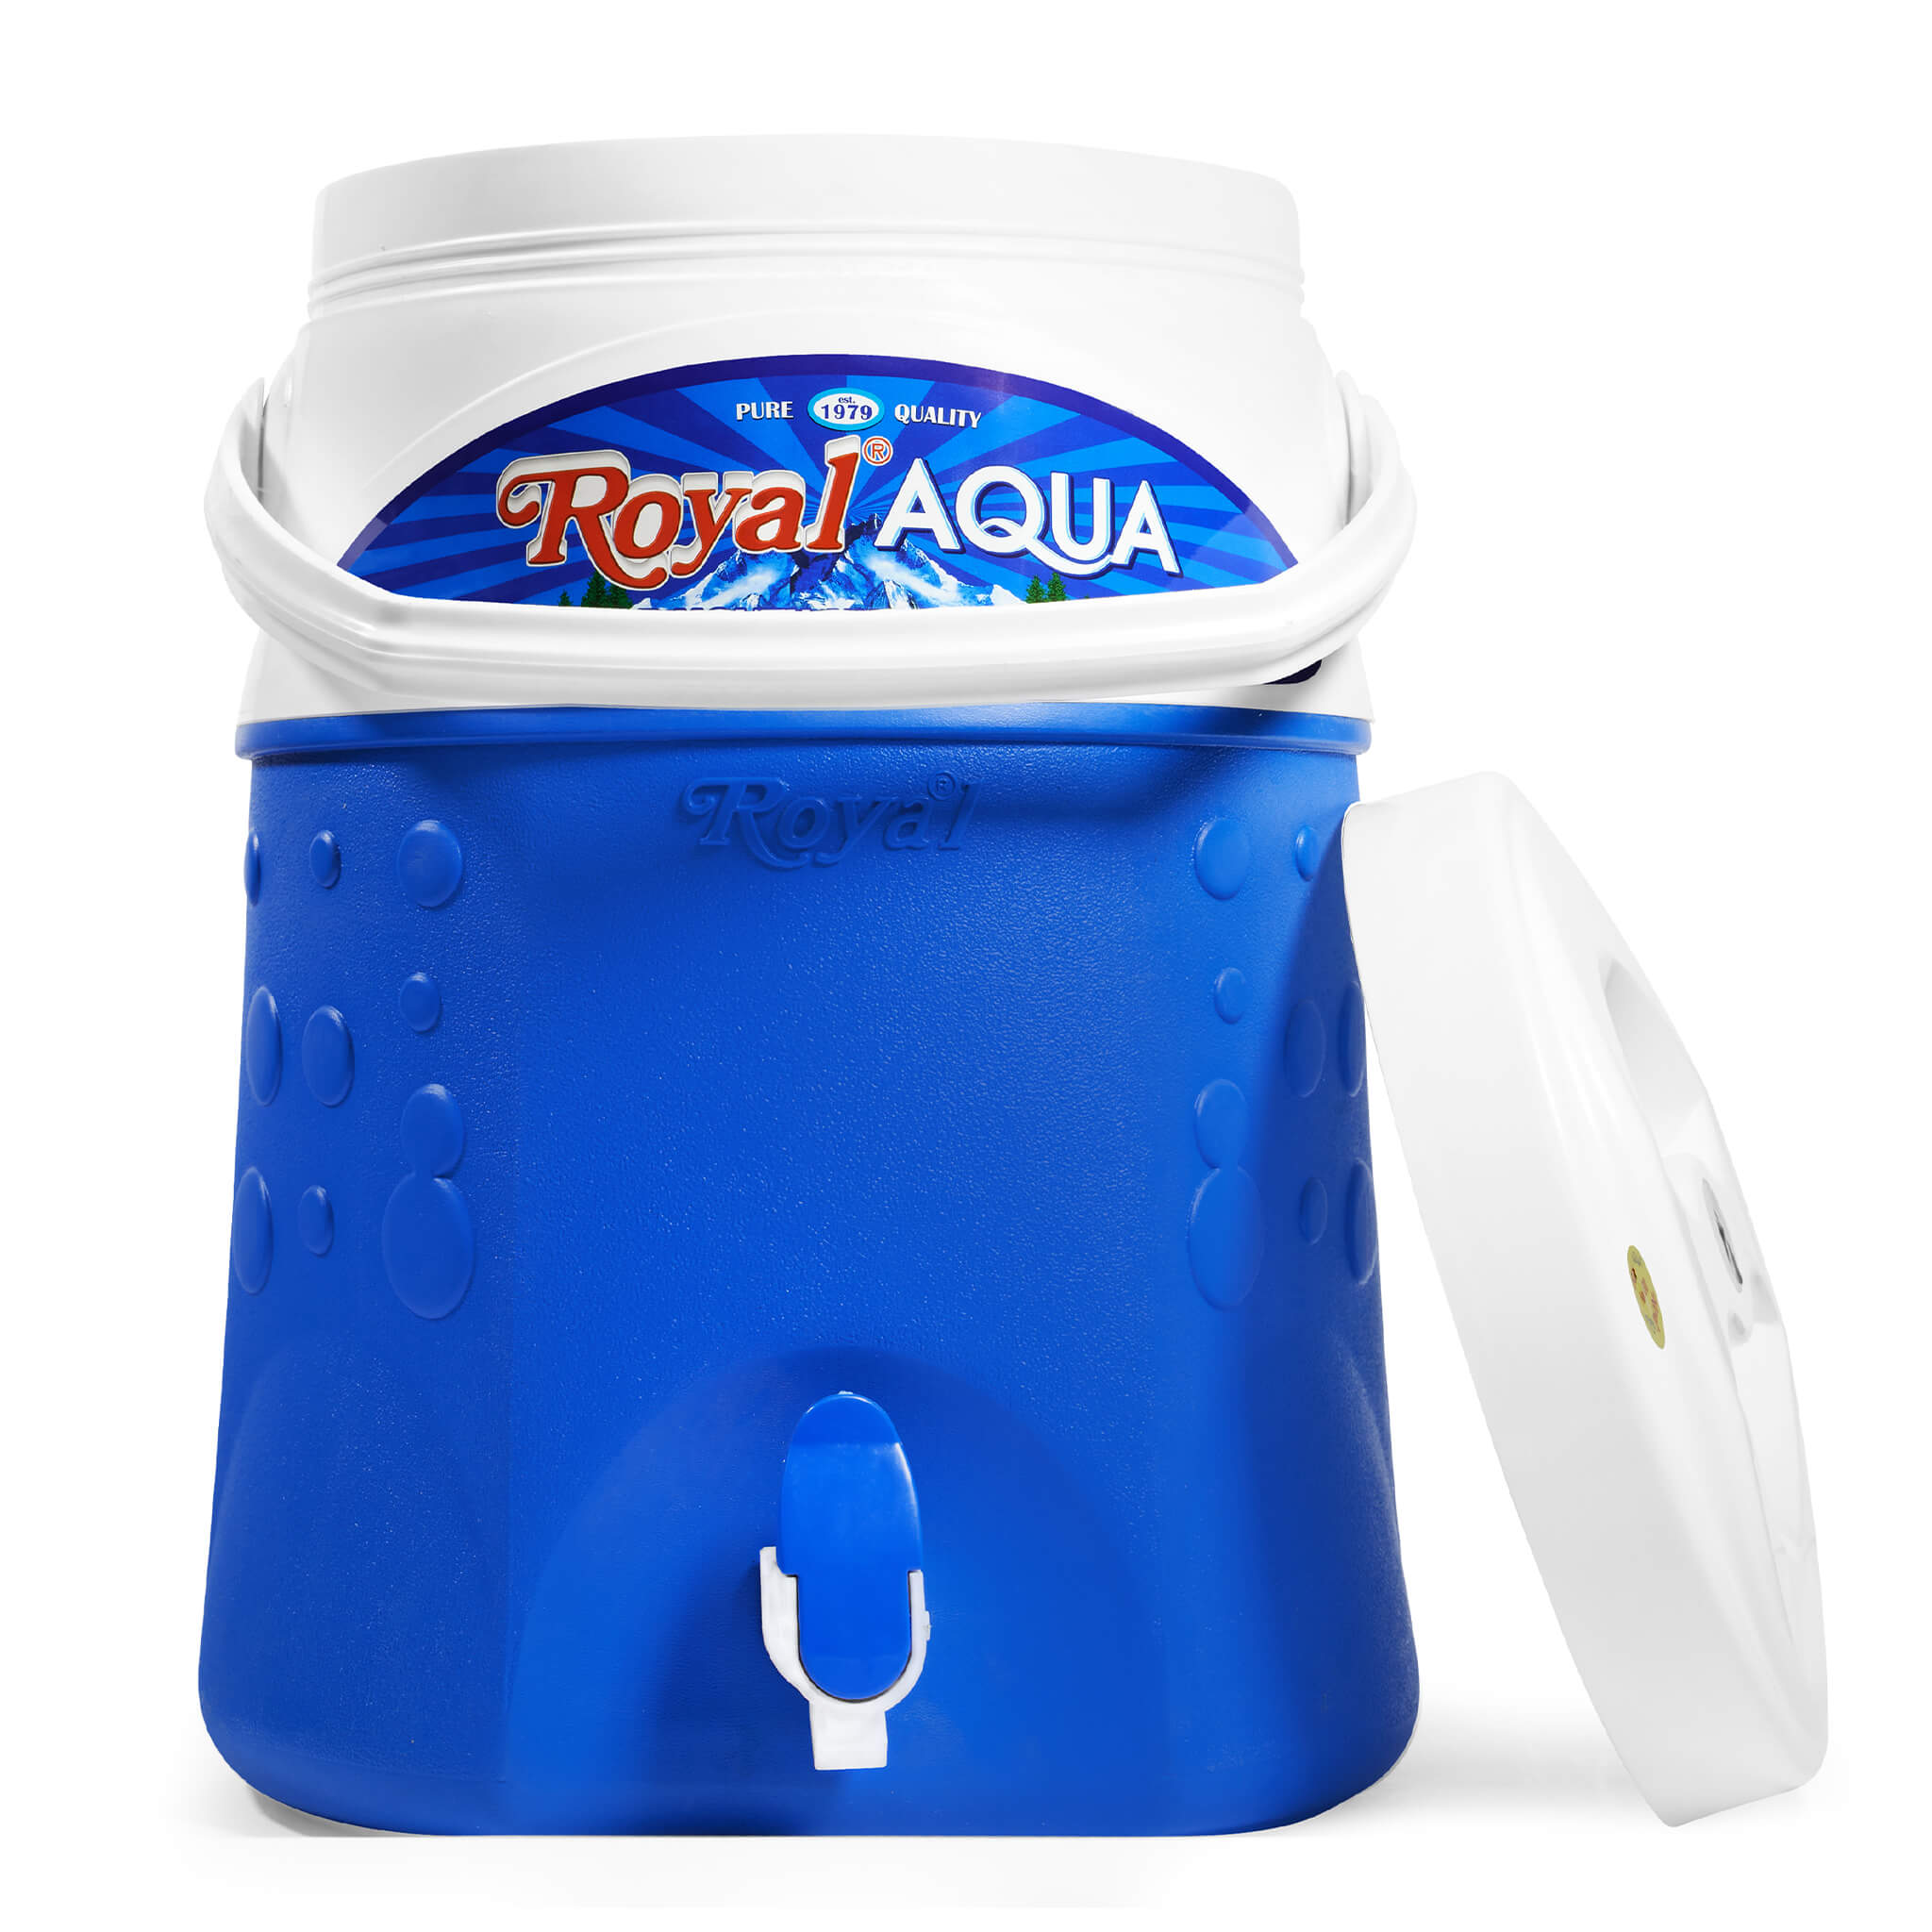 Aqua 14 Liter Cooler